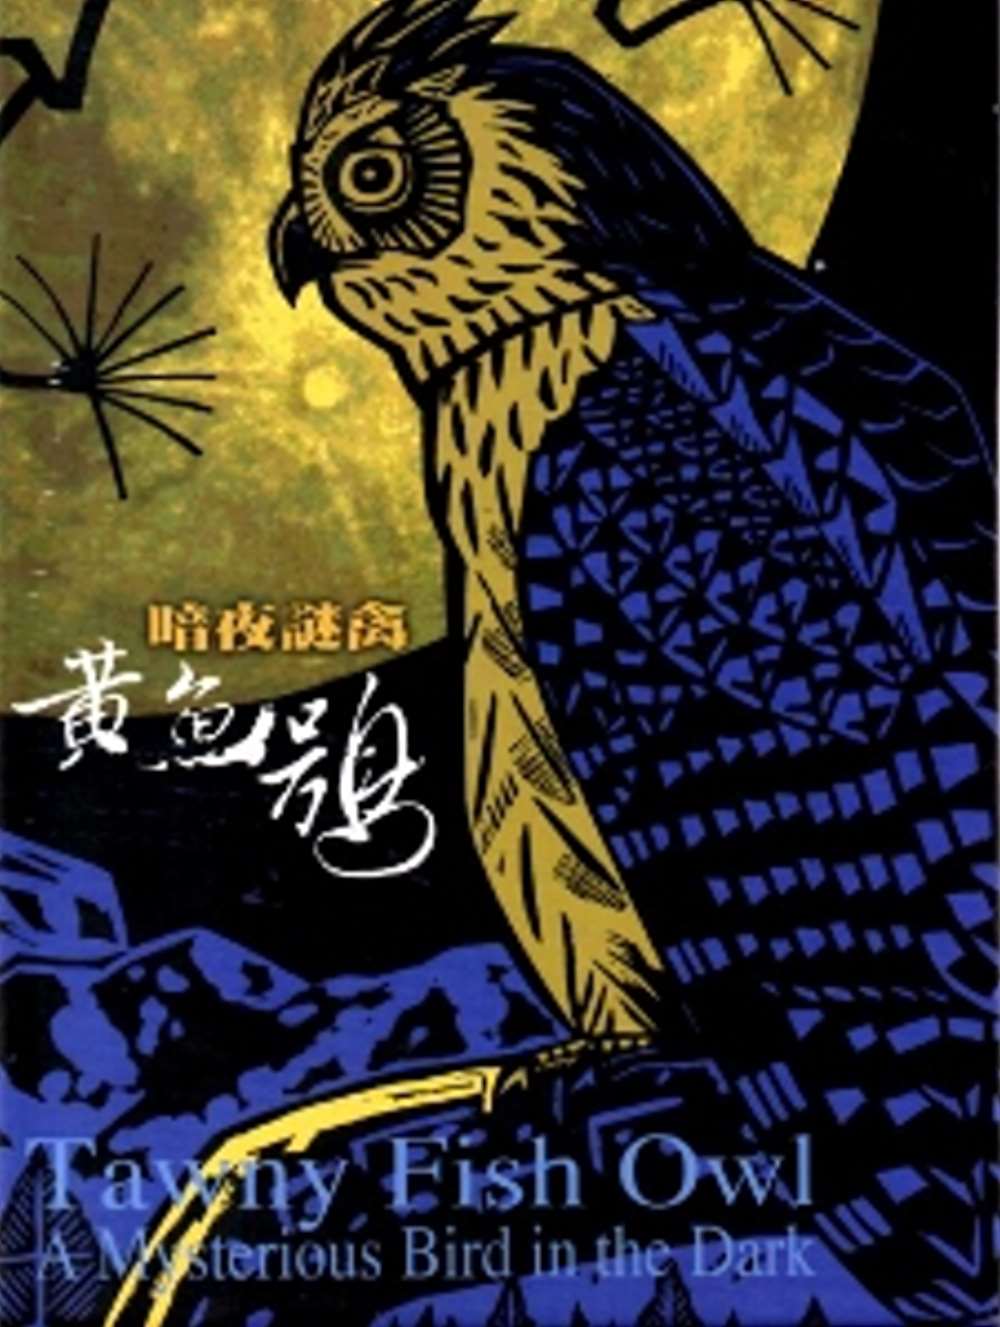 暗夜謎禽-黃魚鴞[DVD]